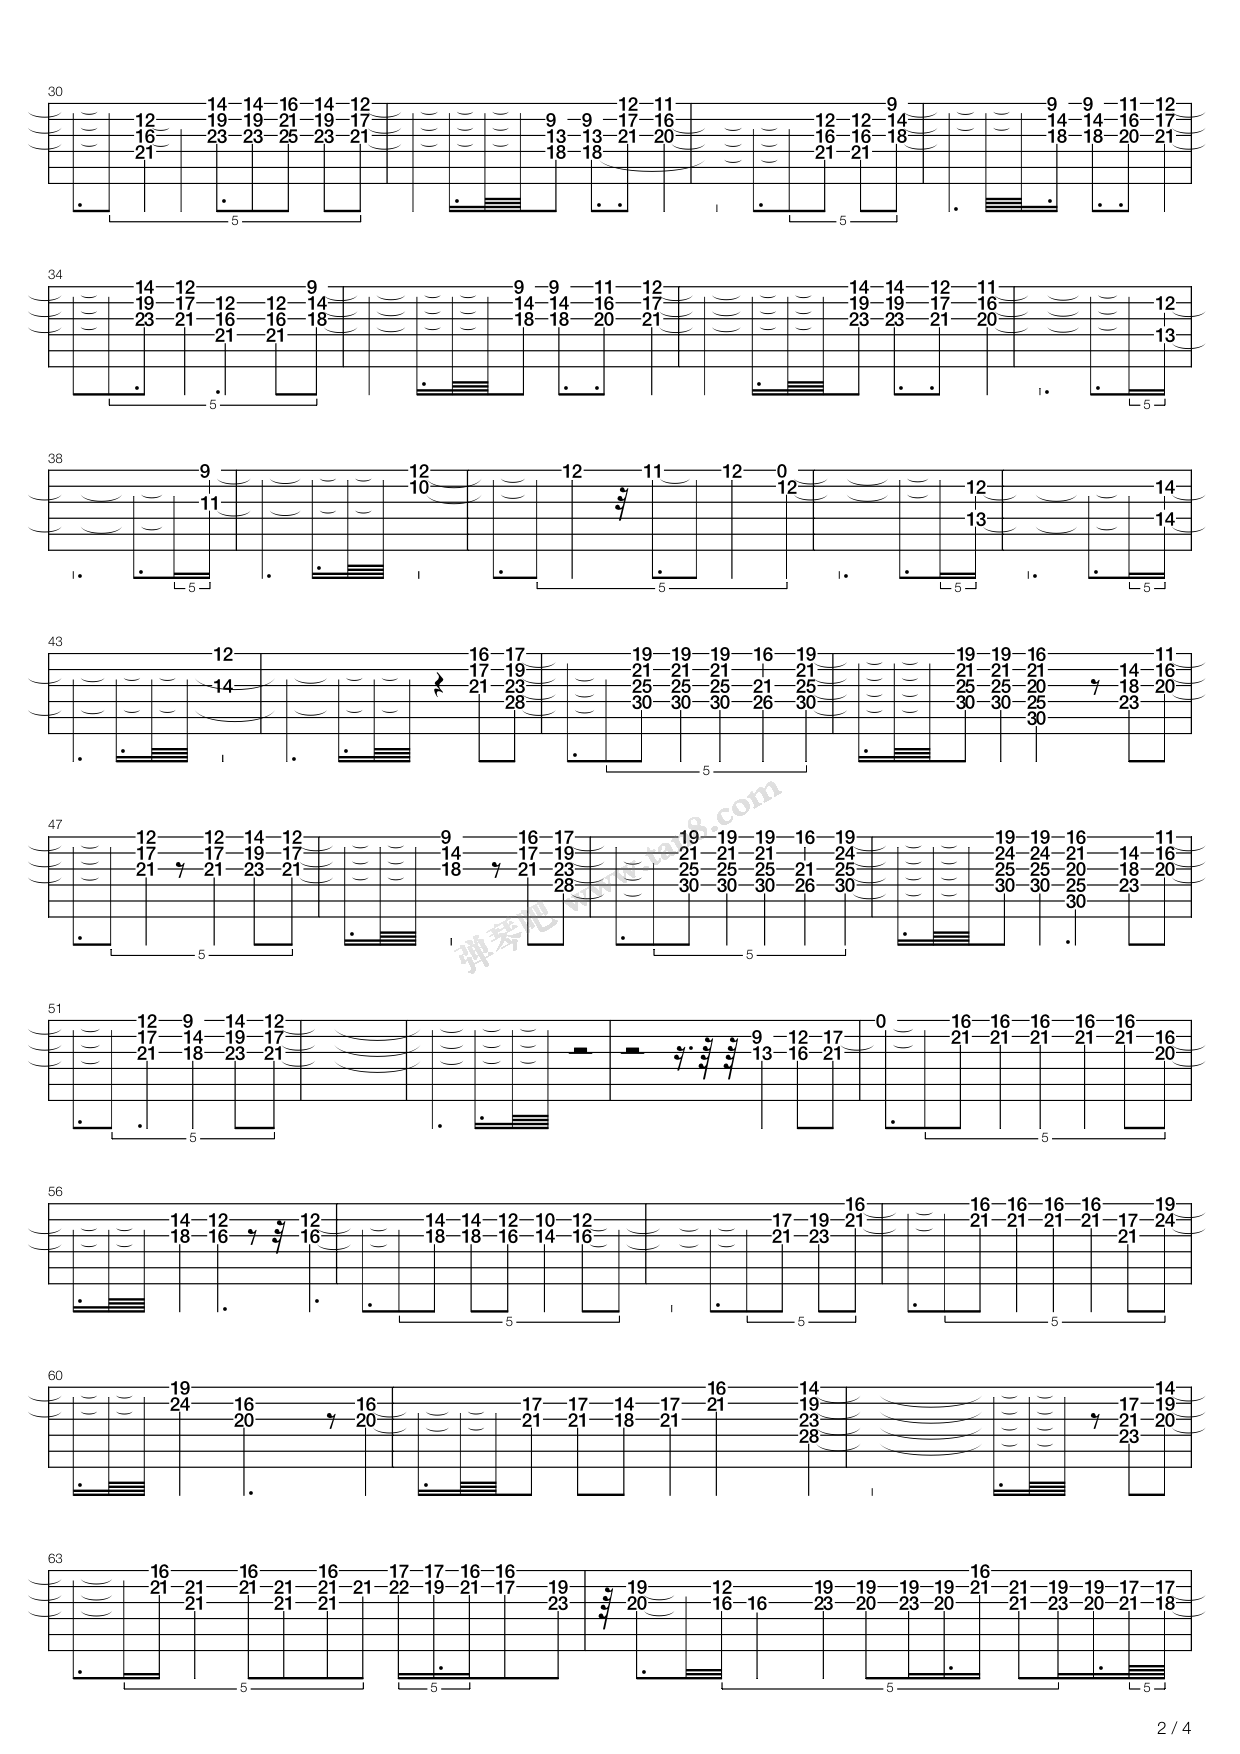 【下载】《刘军吉他乐团重奏曲集教程12本-五六线谱对照版》高清PDF | 极易音乐